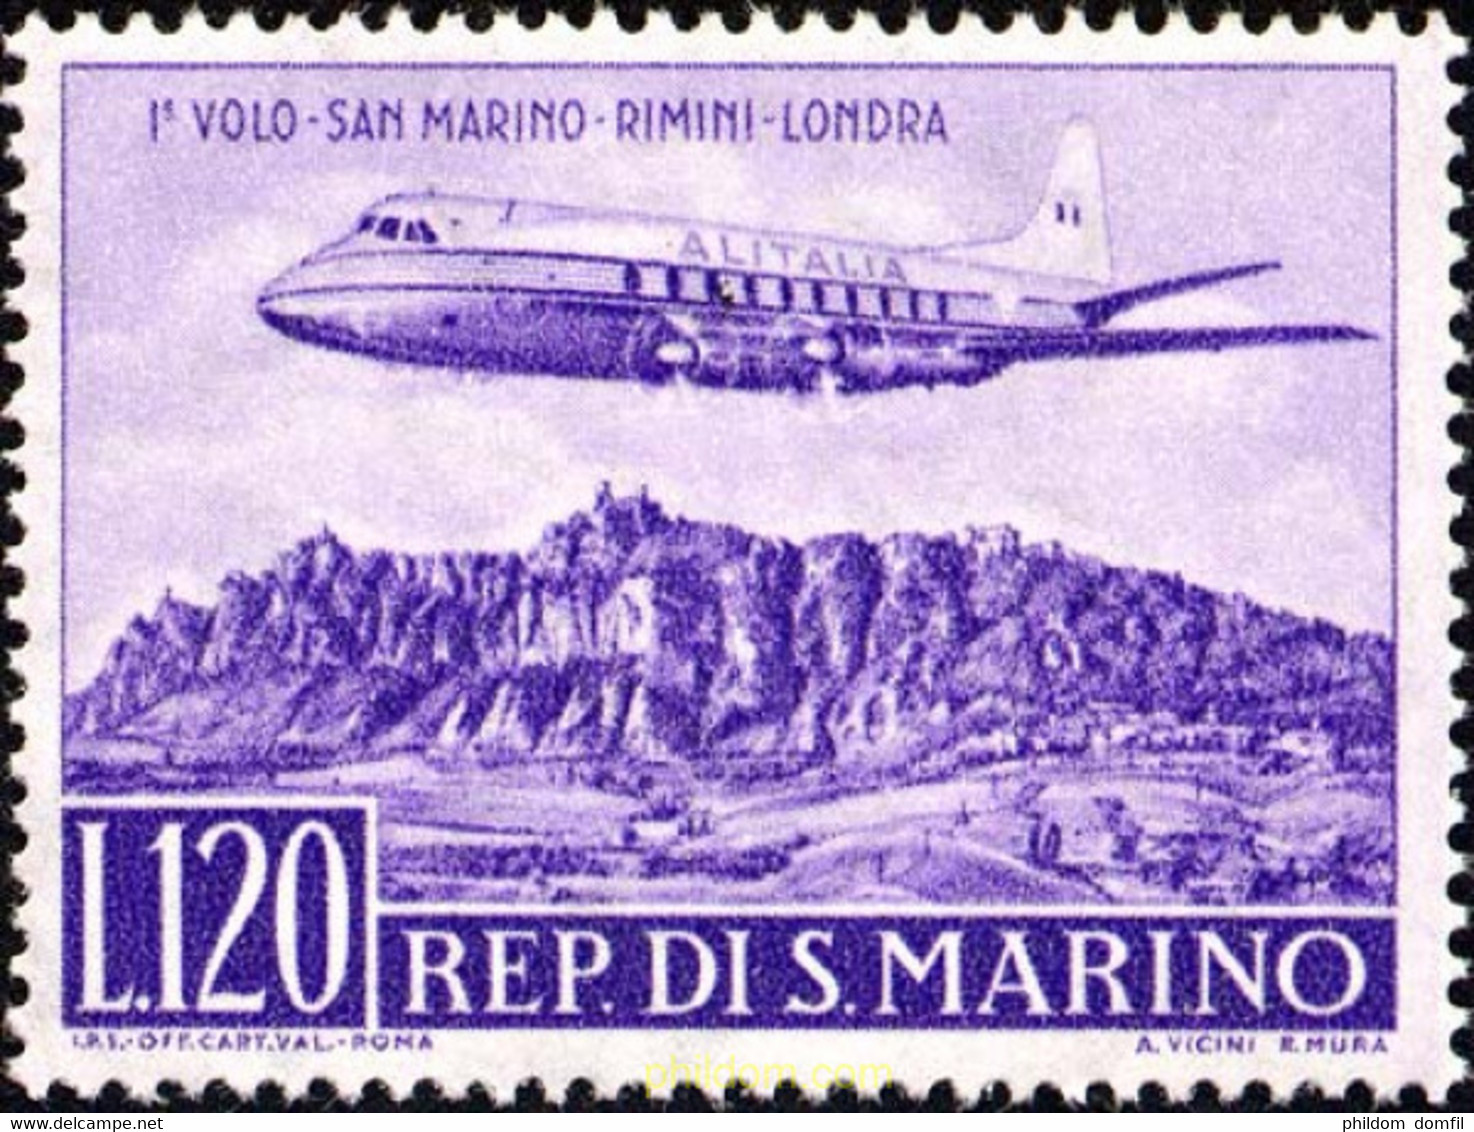 165698 MNH SAN MARINO 1959 PRIMER VUELO SAN MARINO-RIMINI-LONDRES - Usati